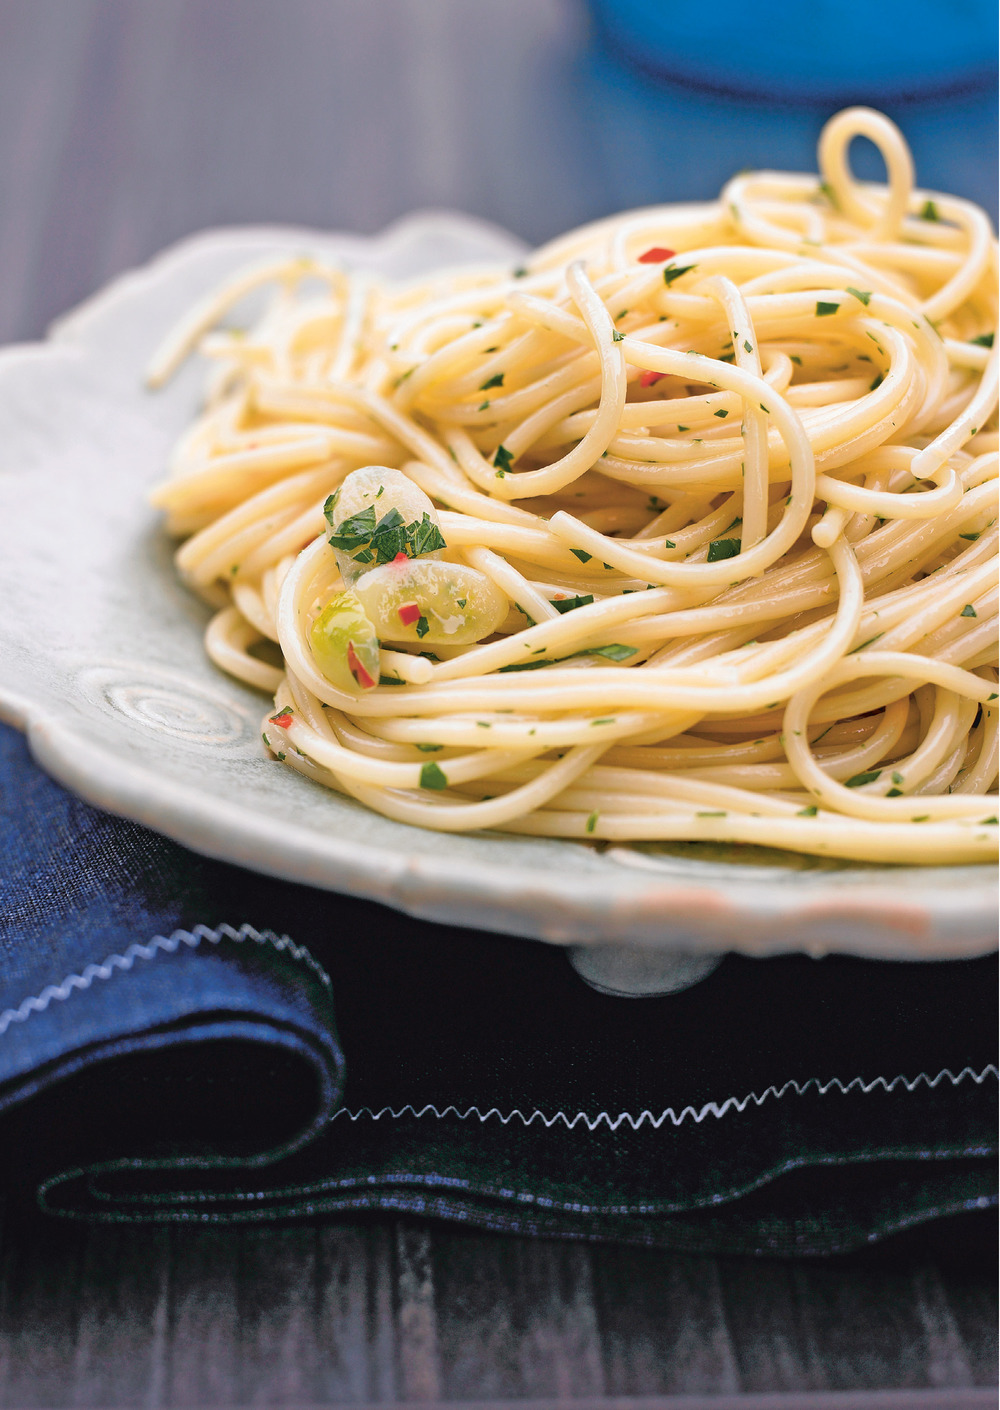 Spaghetti-aglio-e-olio.tif